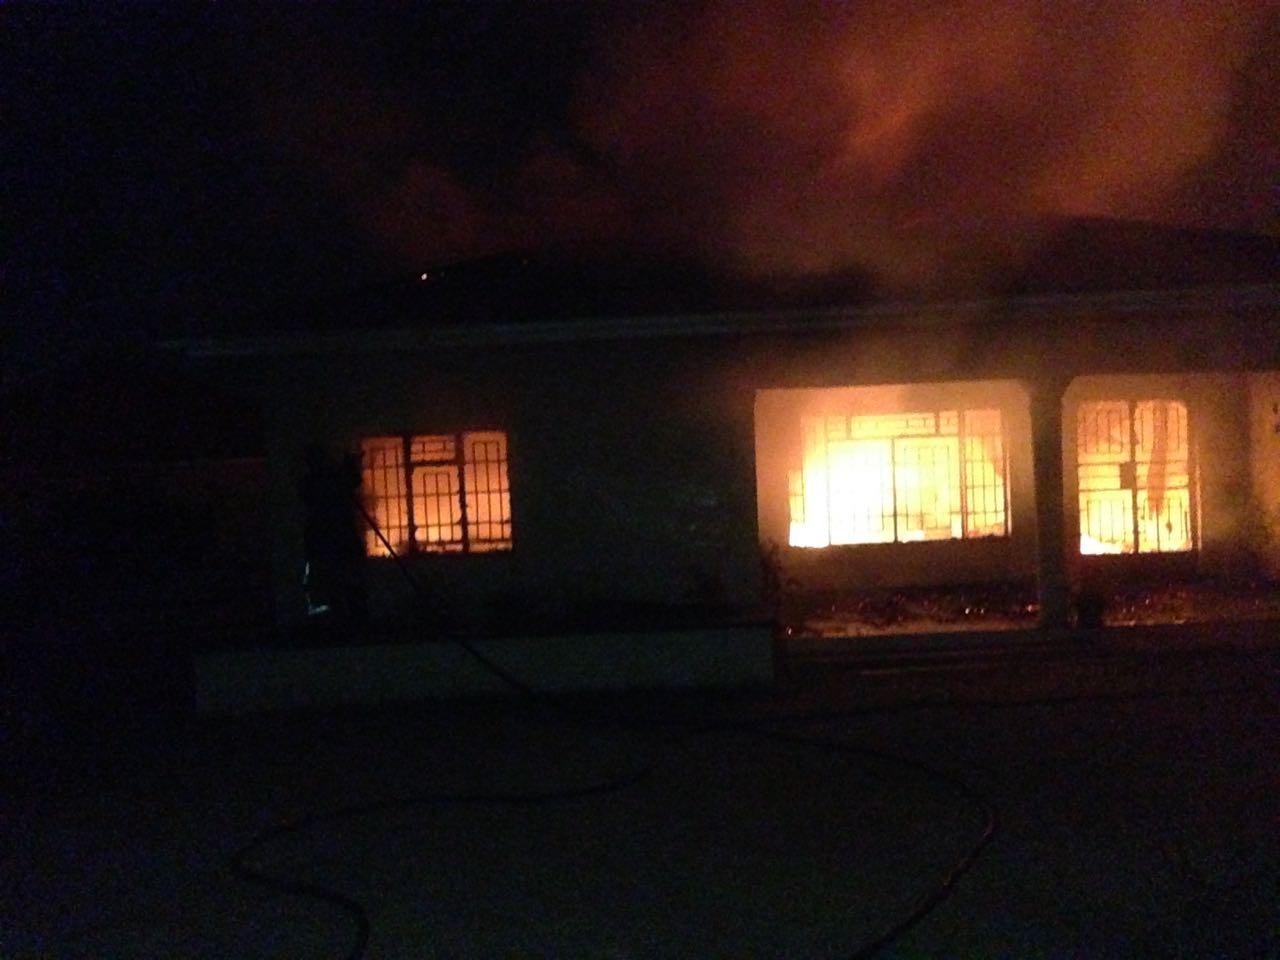 Unknown Men Set House Ablaze in Rumphi